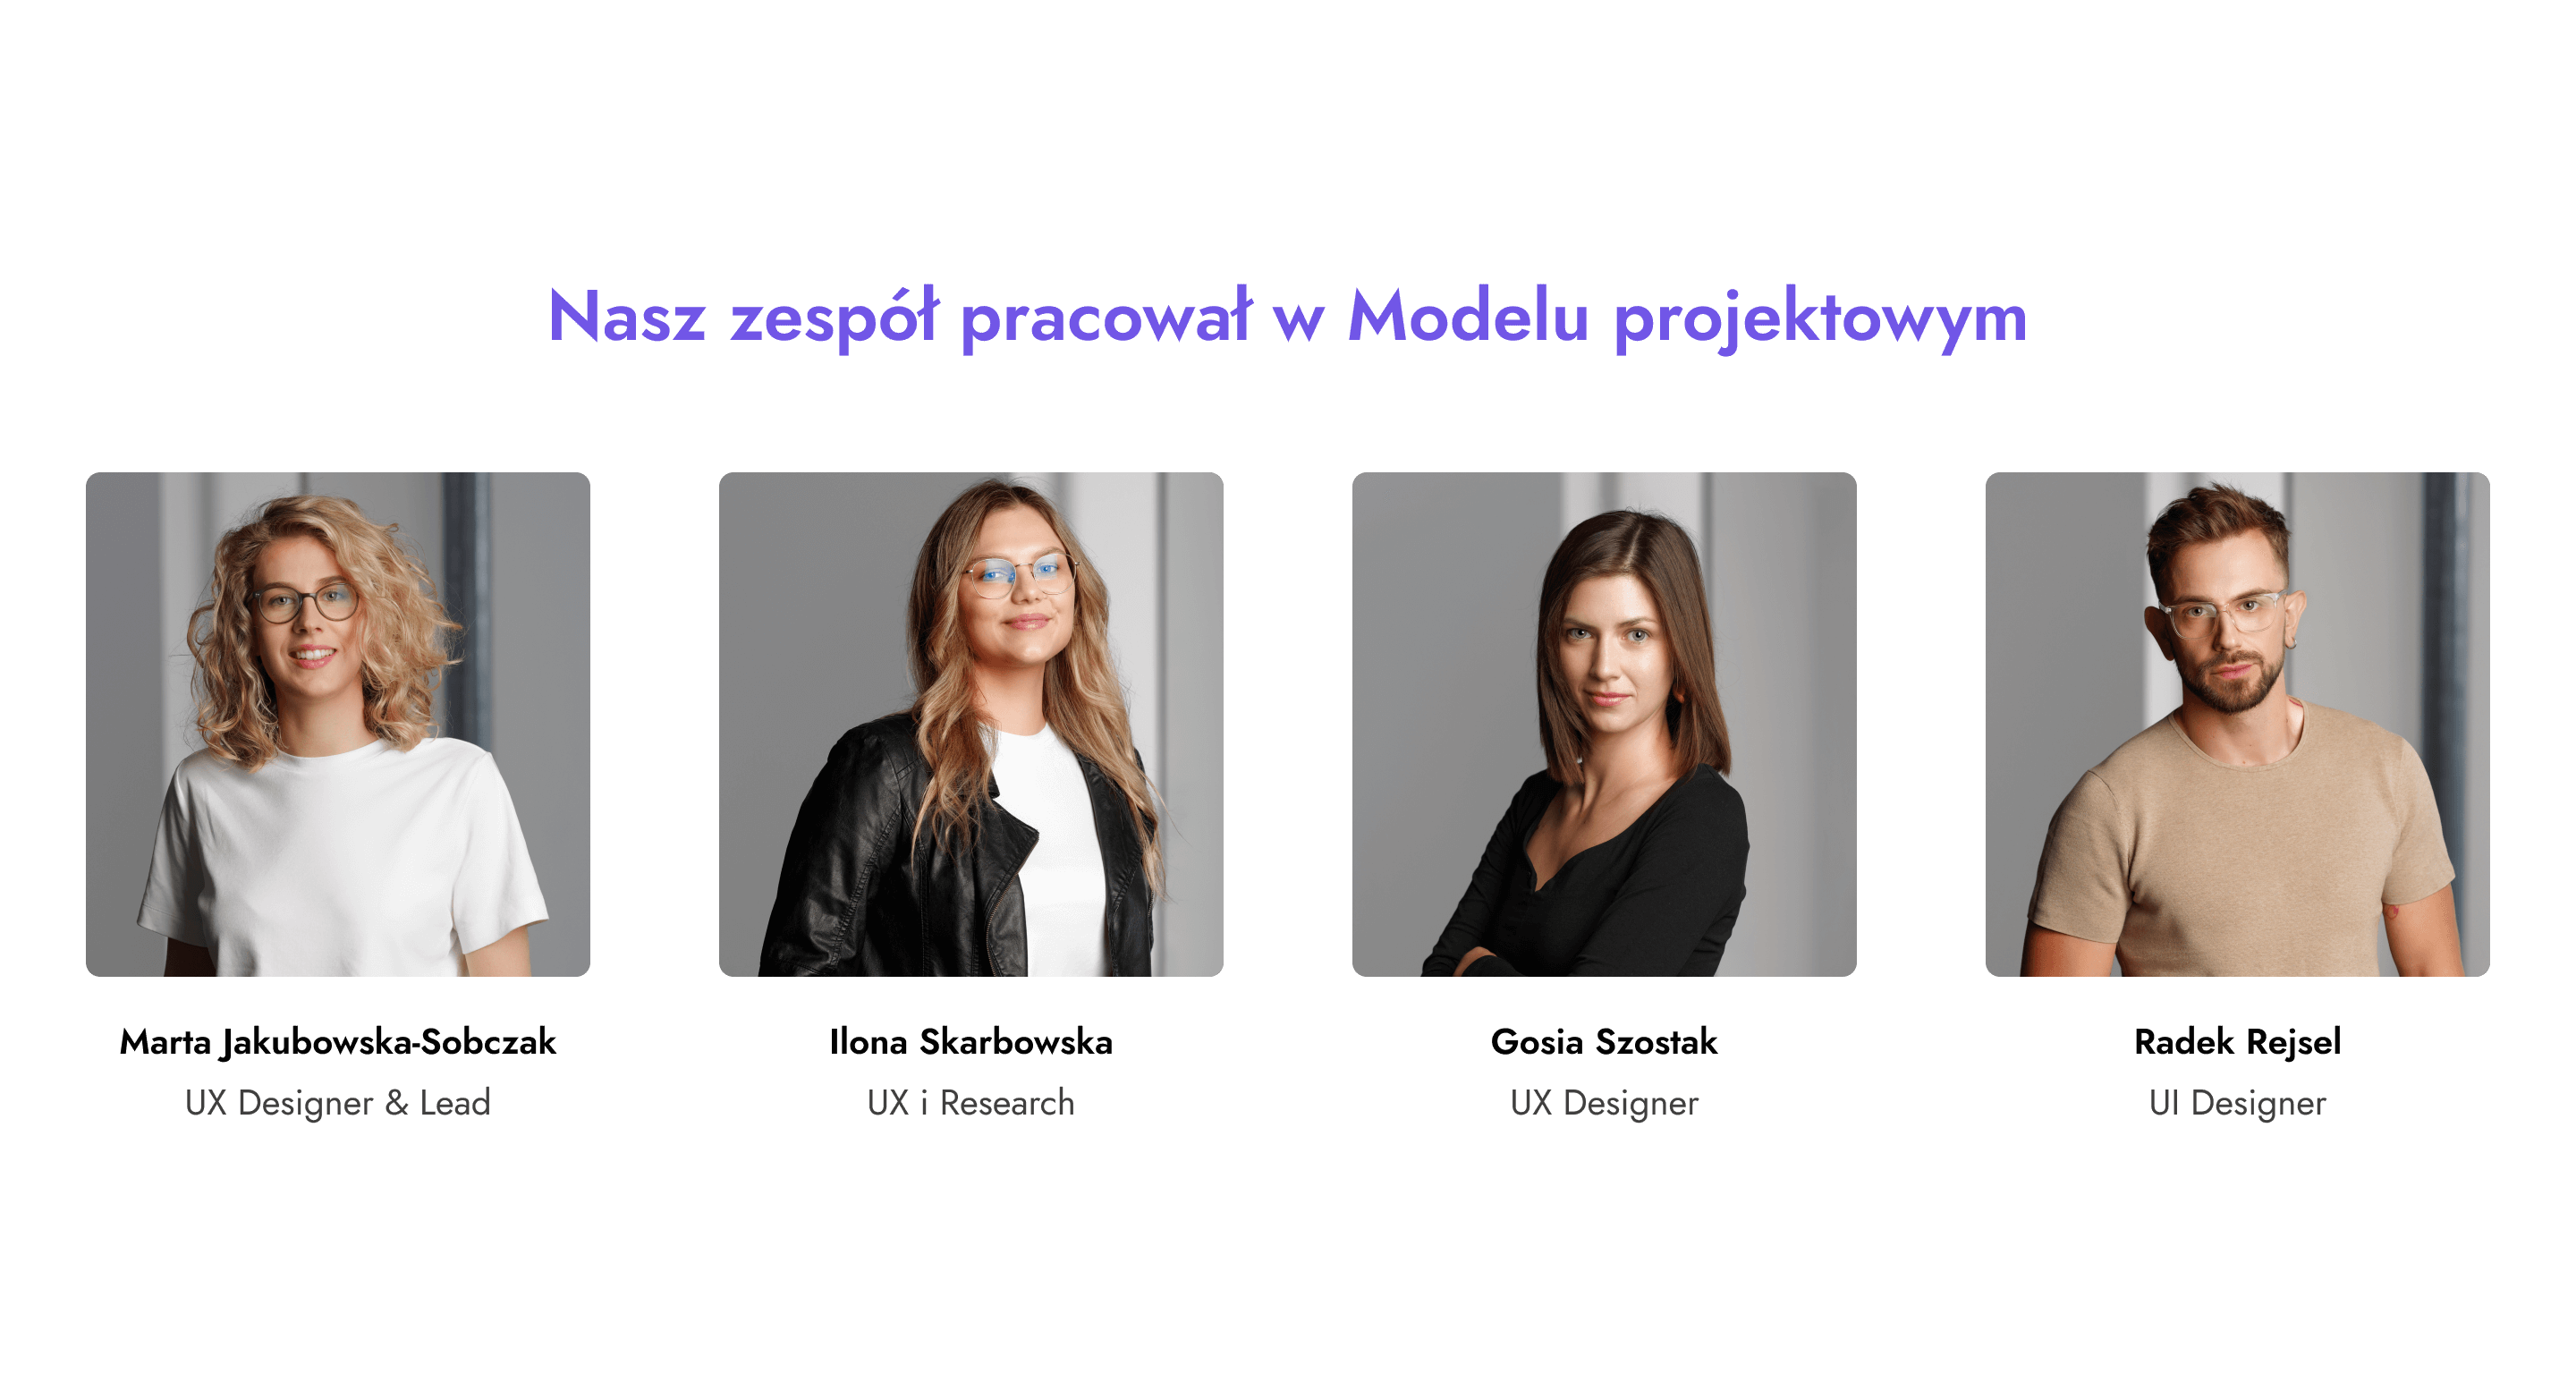 Skład naszego zespołu, który pracował w modelu projektowym. Marta Jakubowska-Sobczak, Ilona Skarbowska, Gosia Szostak, Radek Rejsel.